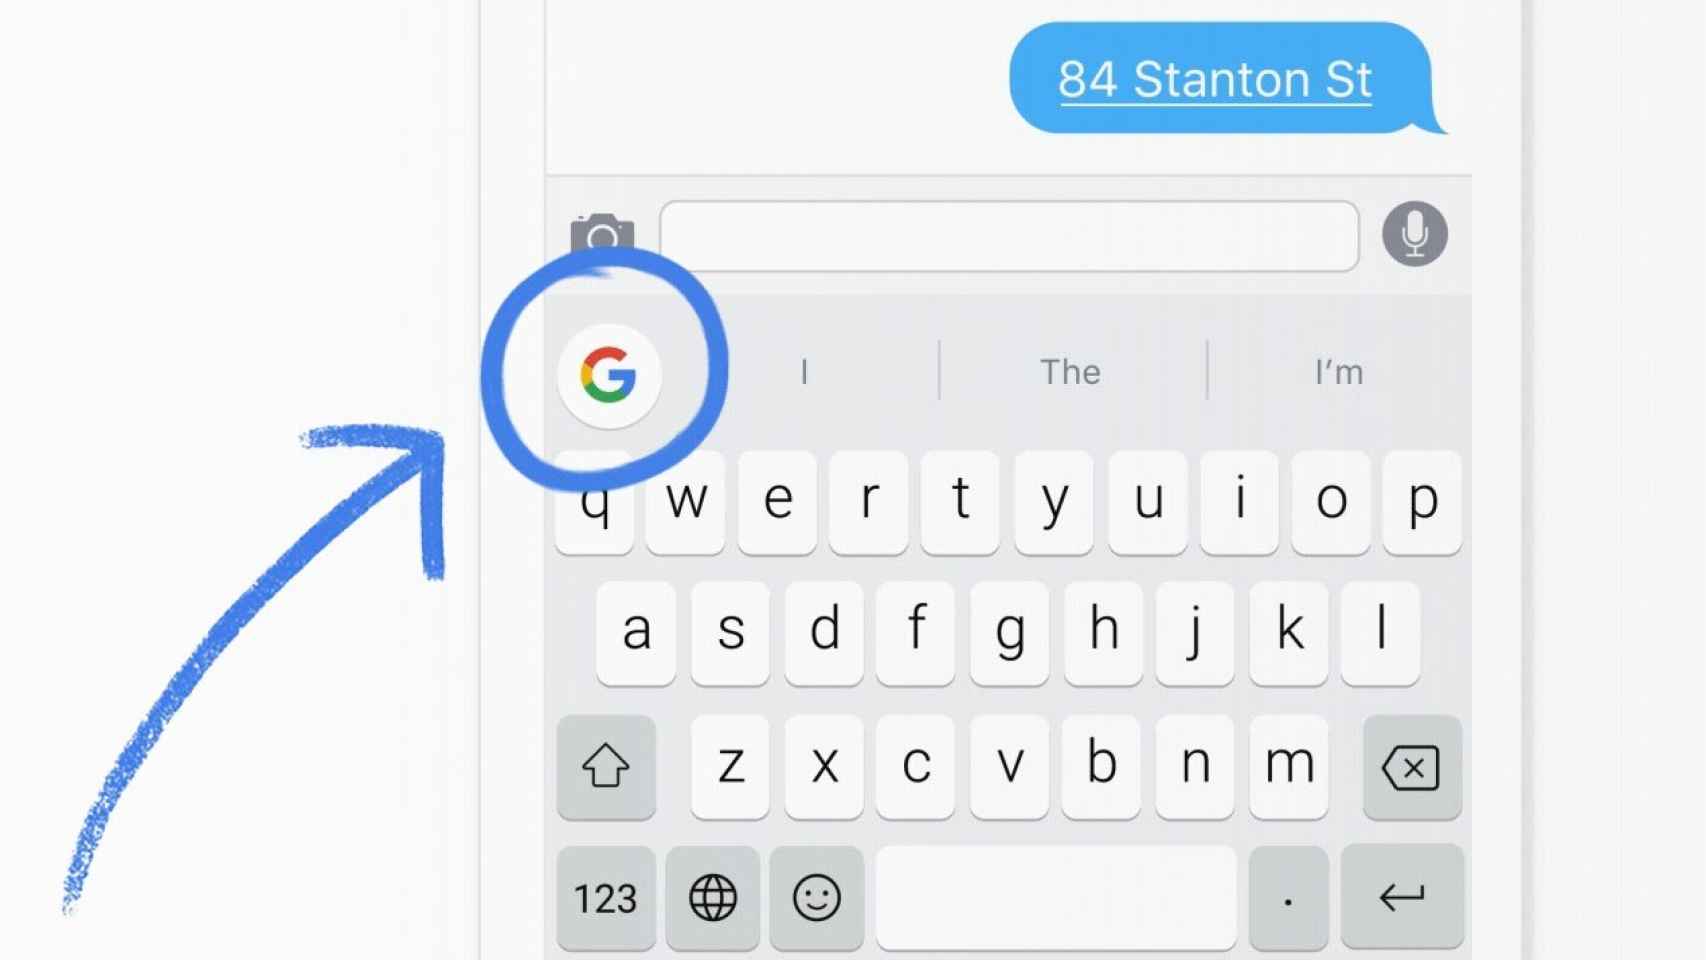 Con el nuevo teclado de Google escribe a mano dibujando letras y emojis